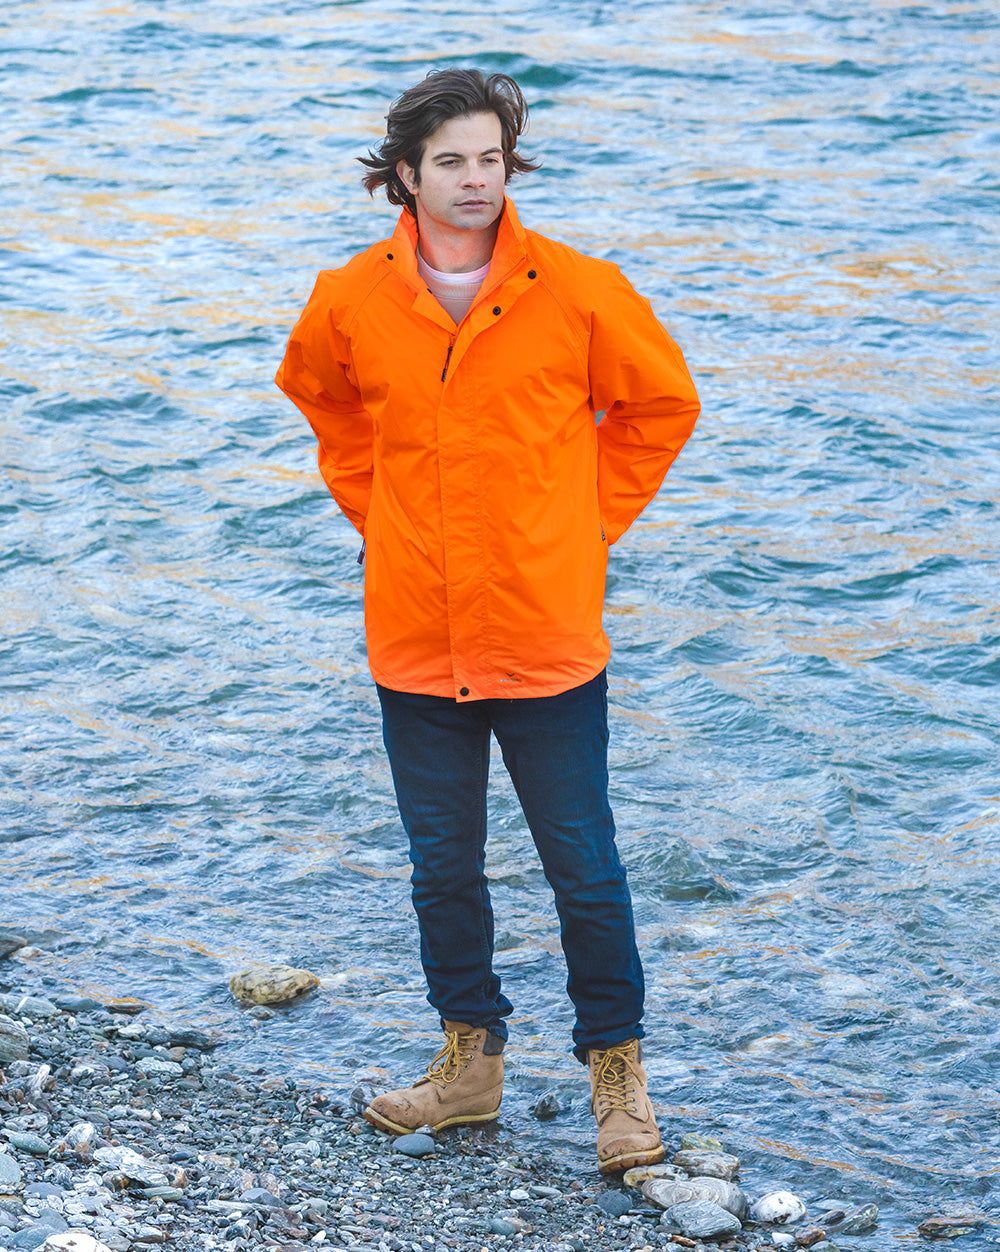 STOWaway Jacket in Fluoro Orange